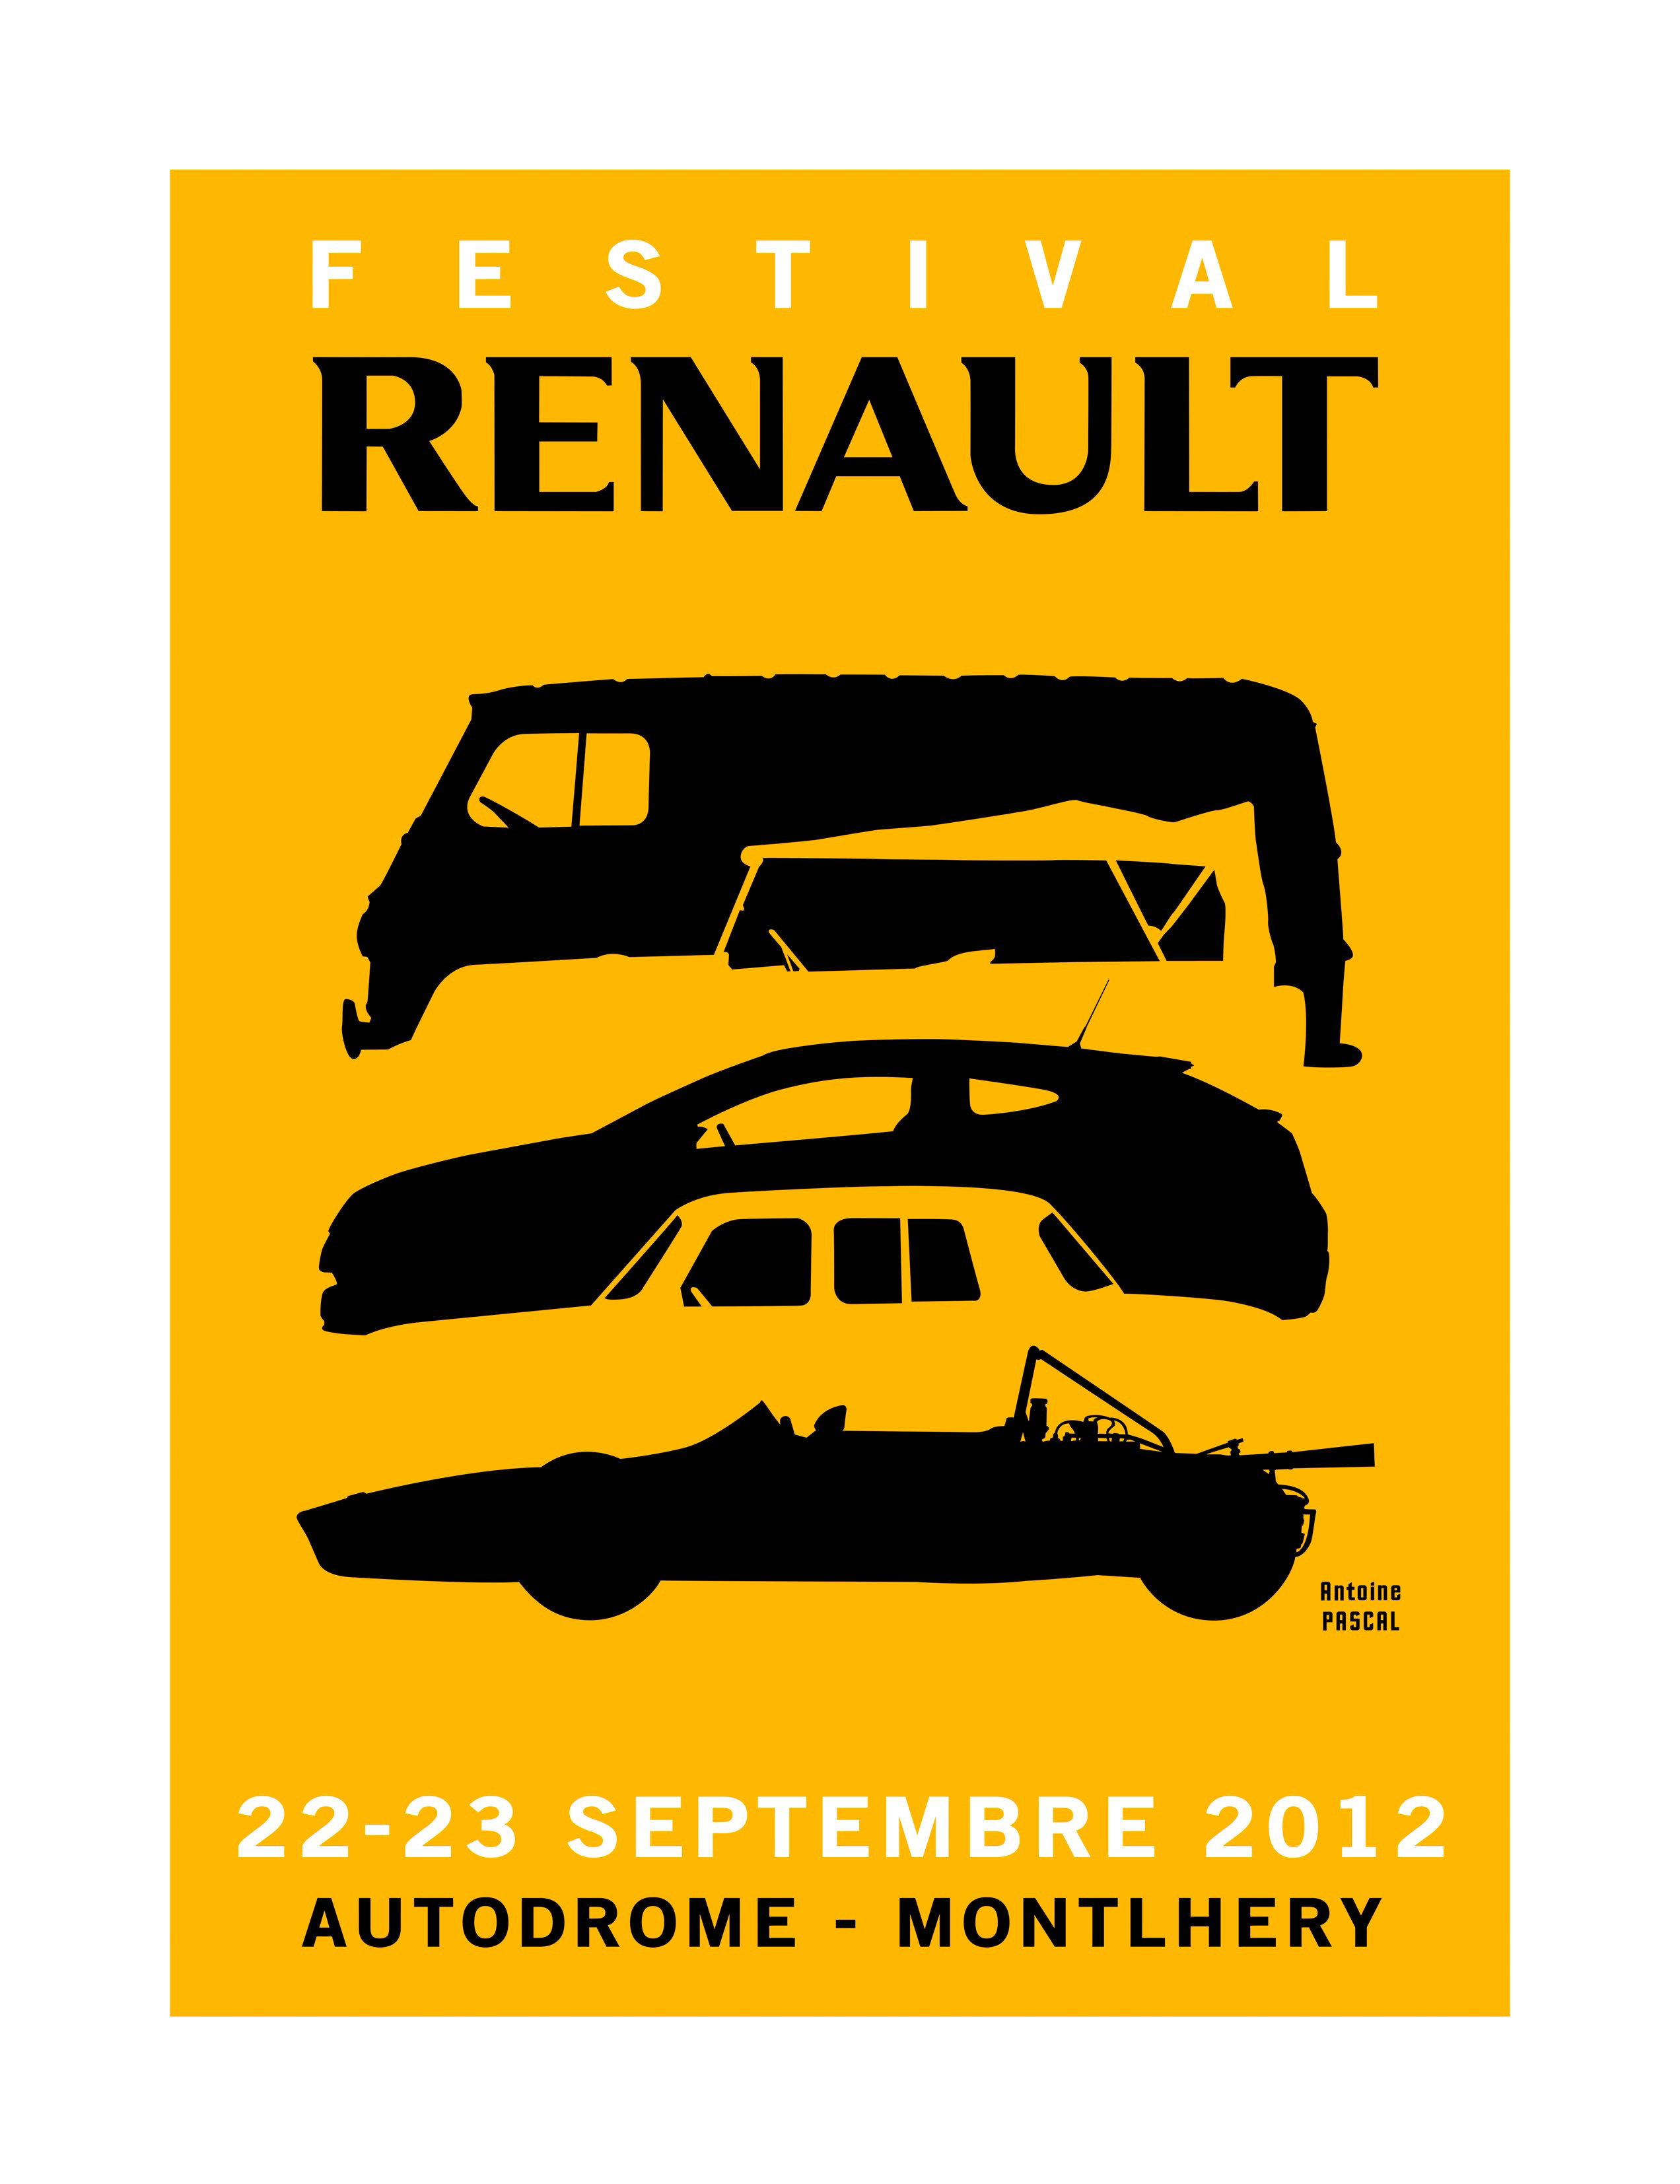 Renault chystá pro všechny příznivce značky velké setkání!